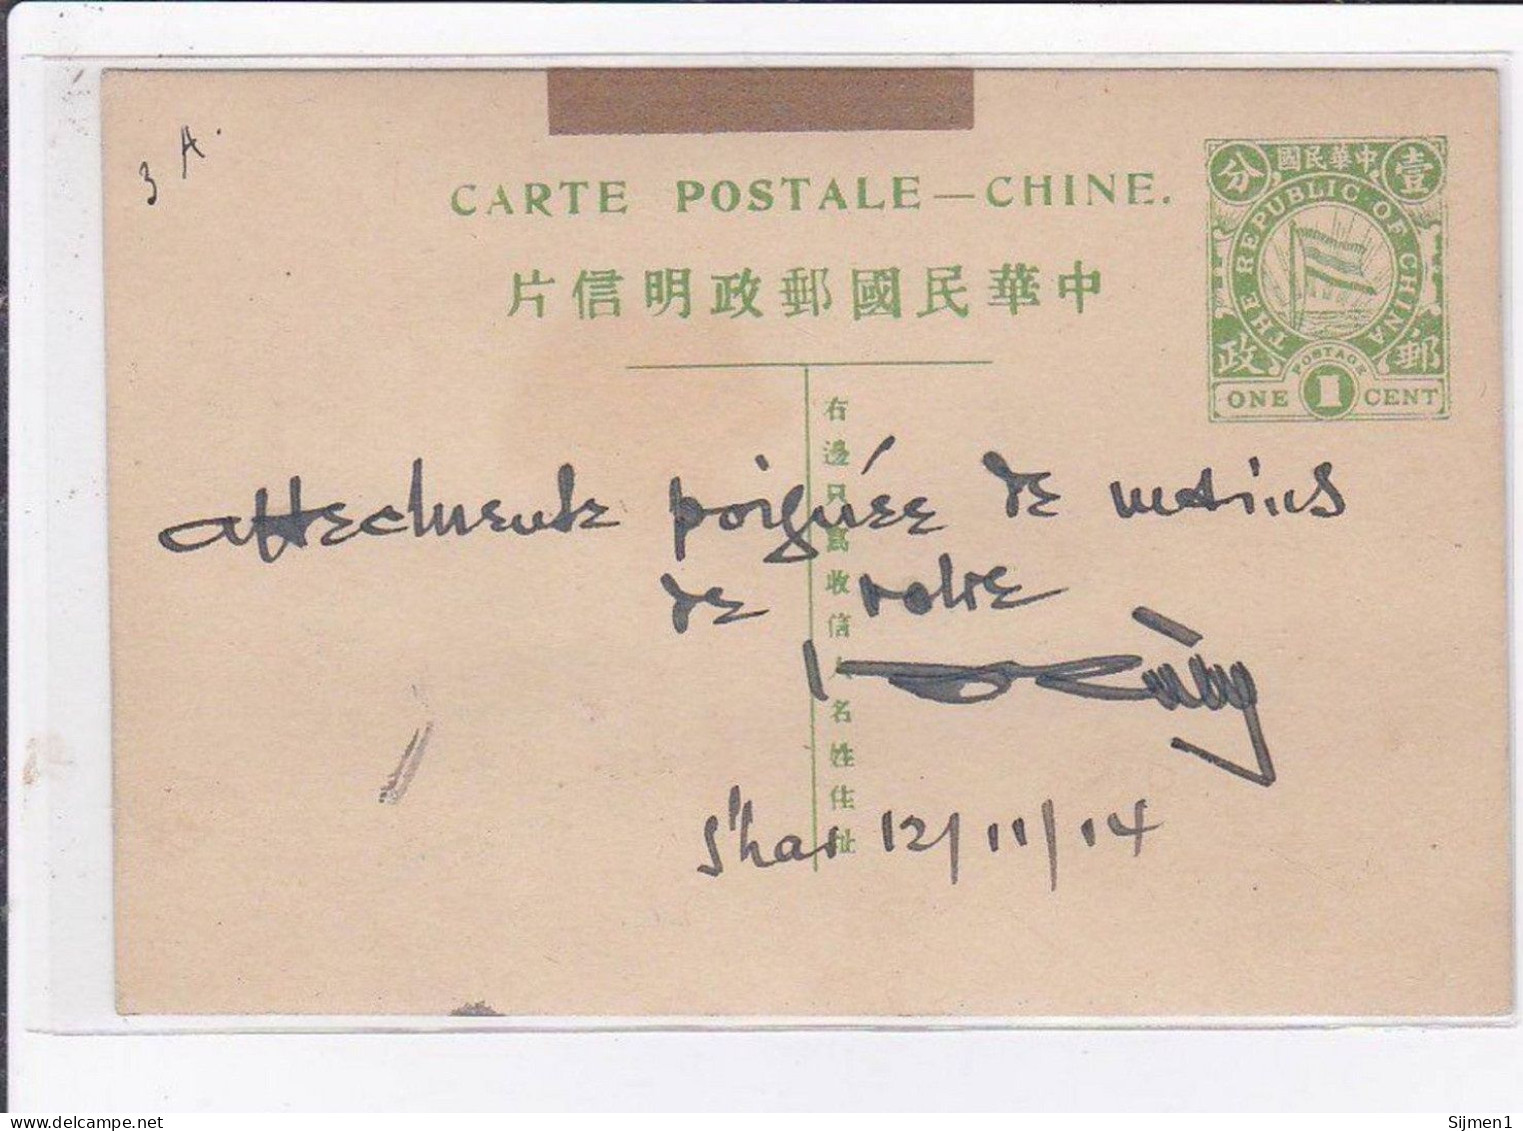 CHINE / CHINA : lot de 17 entiers postaux illustrés de la même archive - 17 postal stationery - état